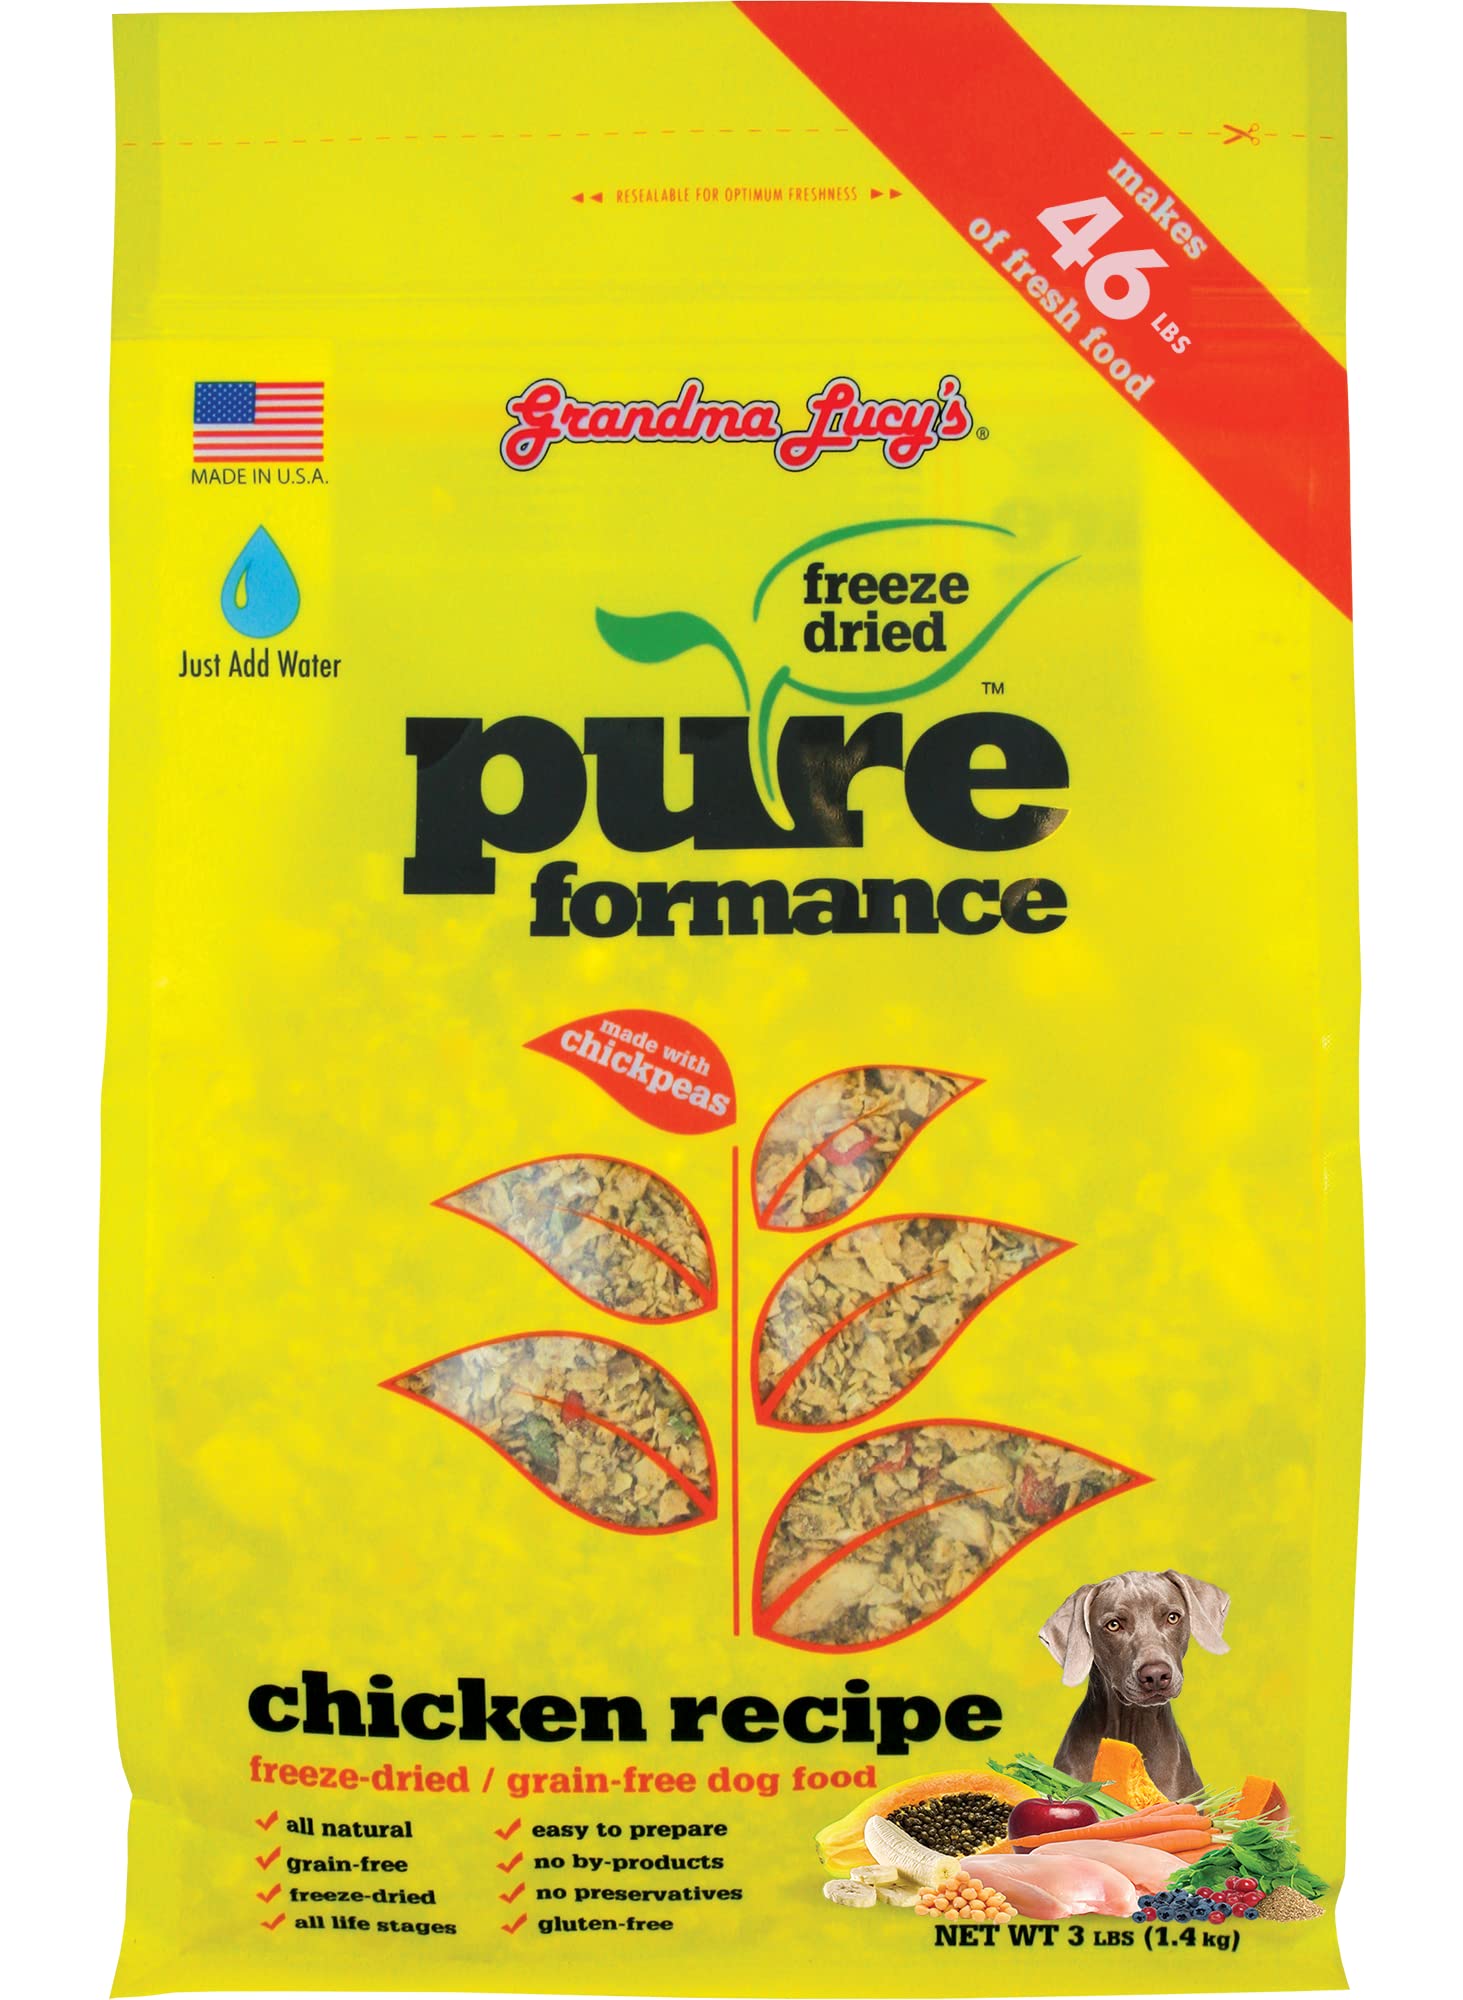 Pureformance chicken